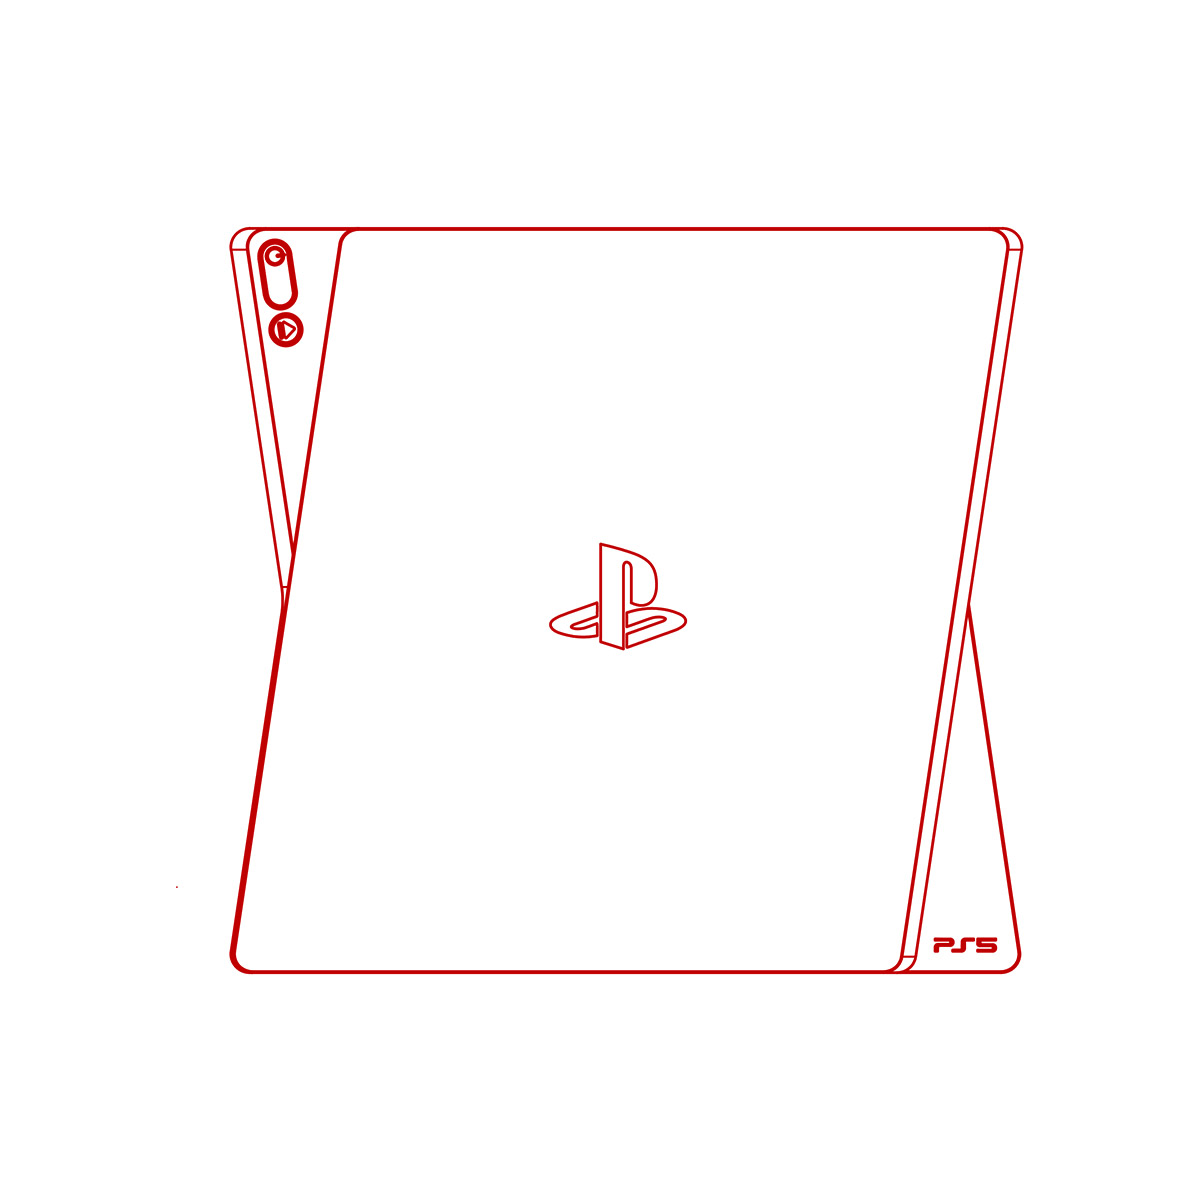 PS5新造型泄露 传闻为索尼新外形专利